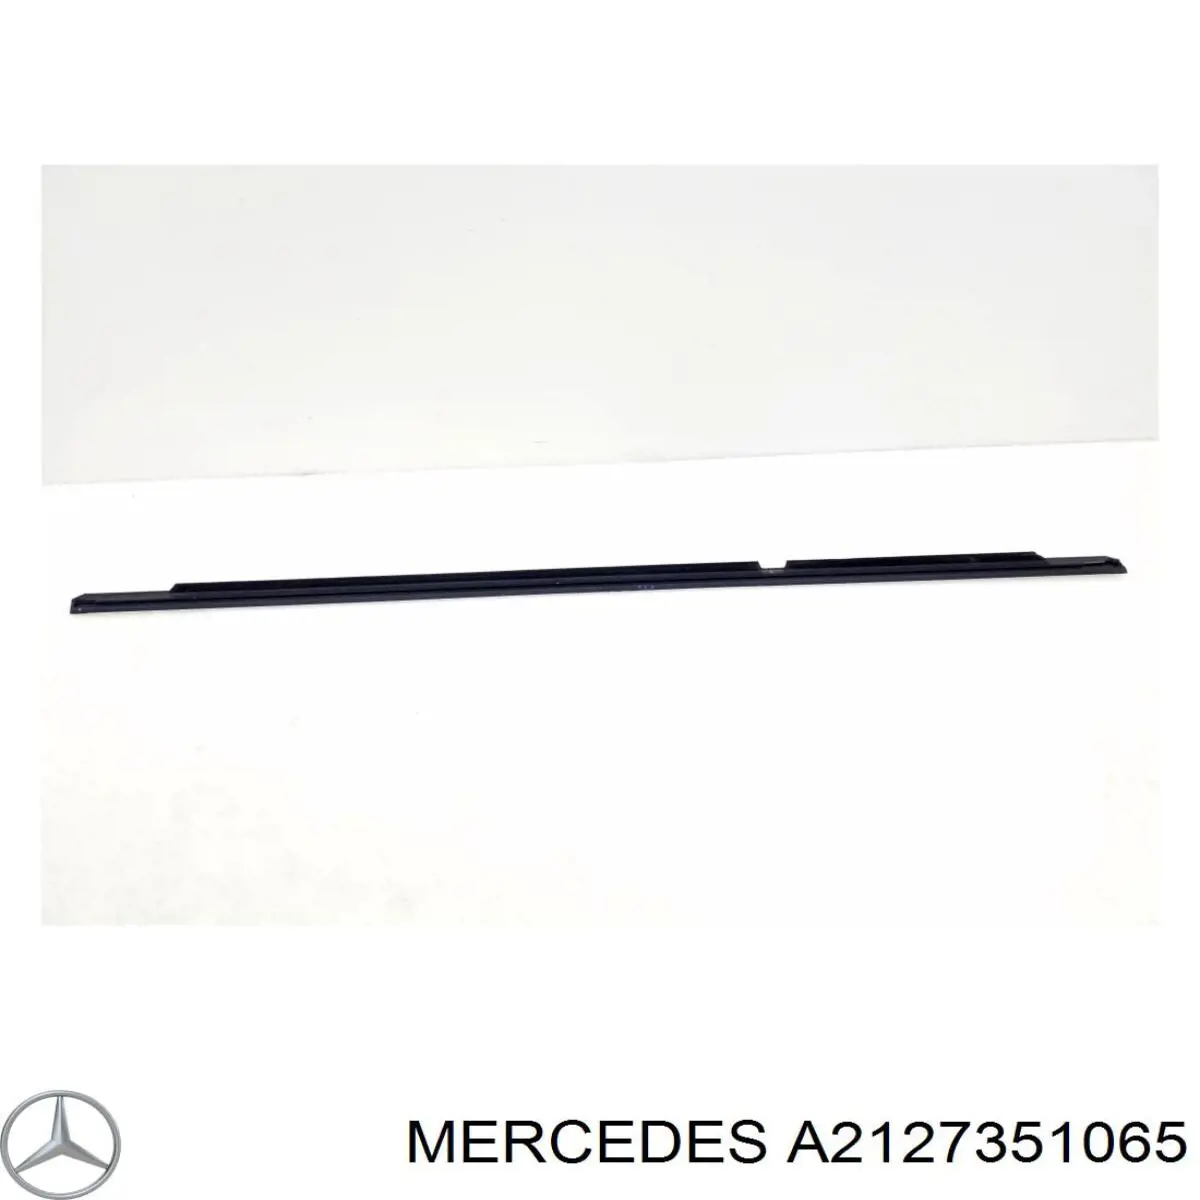 A2127351065 Mercedes lameluna de puerta trasera derecha exterior